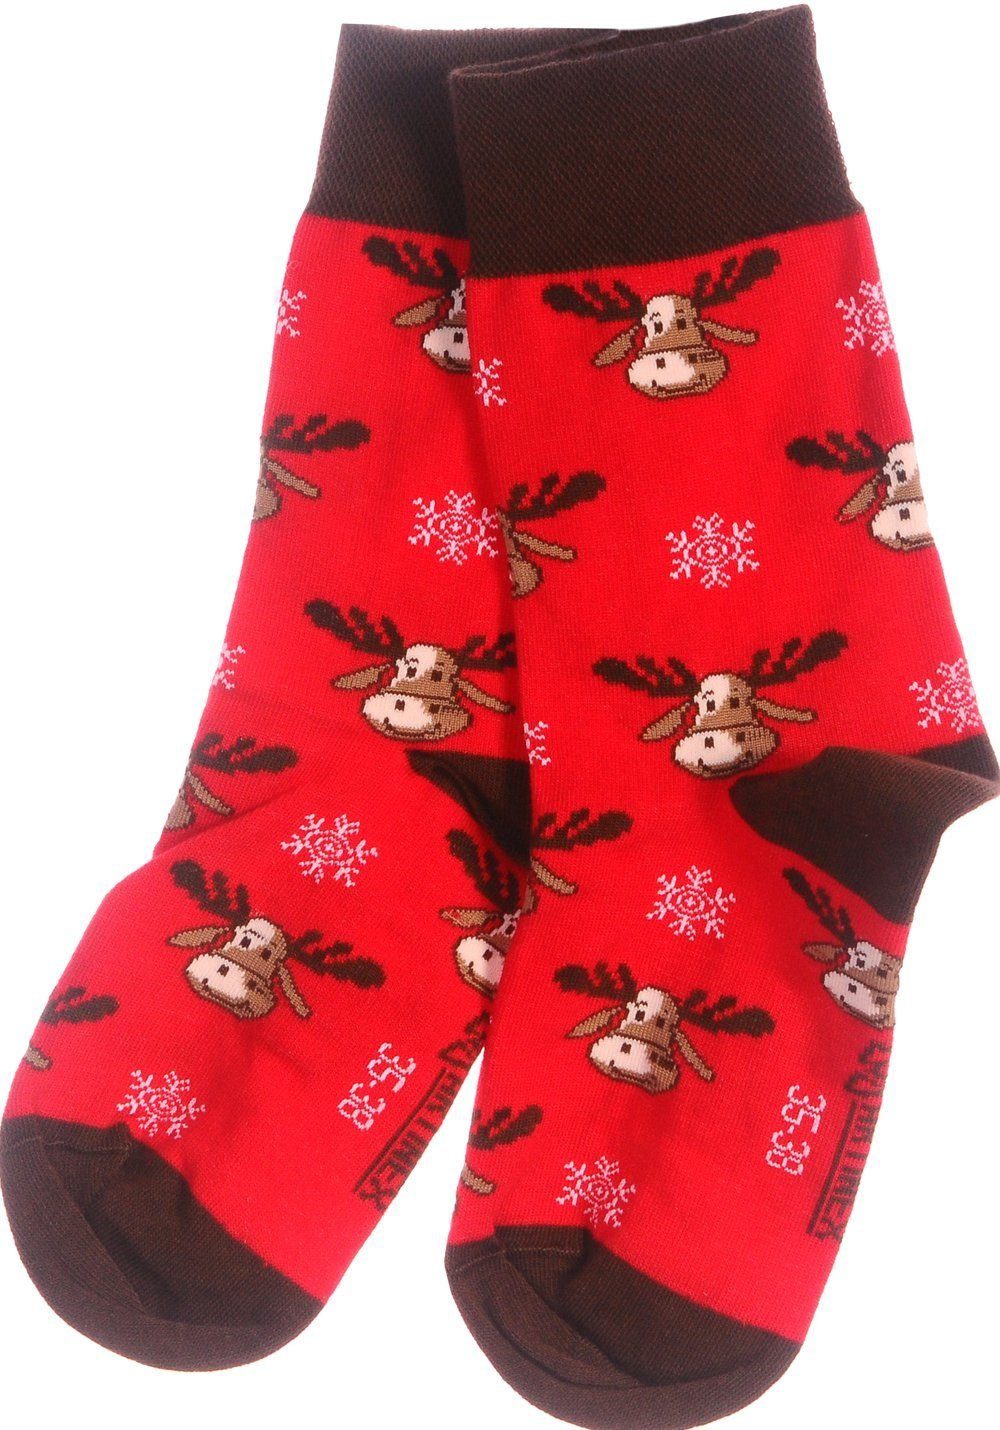 43 Weihnachtssocken, 46 Familie Martinex 39 Freizeitsocken Socken Rot Strümpfe 35 42 Paar die für Socken festlich, 1 ganze Socken weihnachtlich, 38